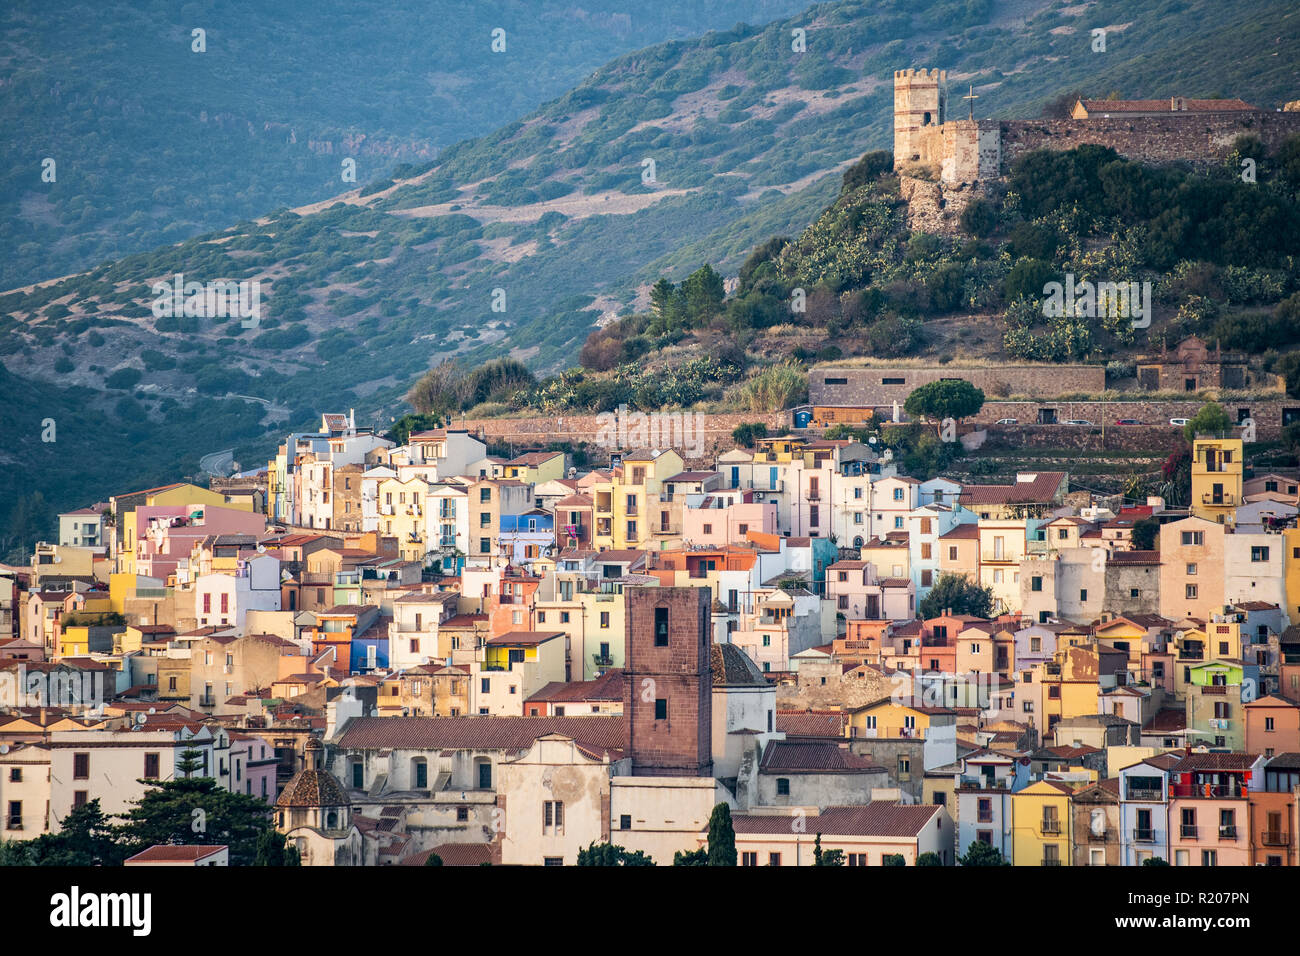 Das schöne Dorf von Bosa mit bunten Häusern und eine mittelalterliche Burg auf dem Gipfel des Hügels. Bosa liegt im Nordwesten von Sardinien, Italien. Stockfoto